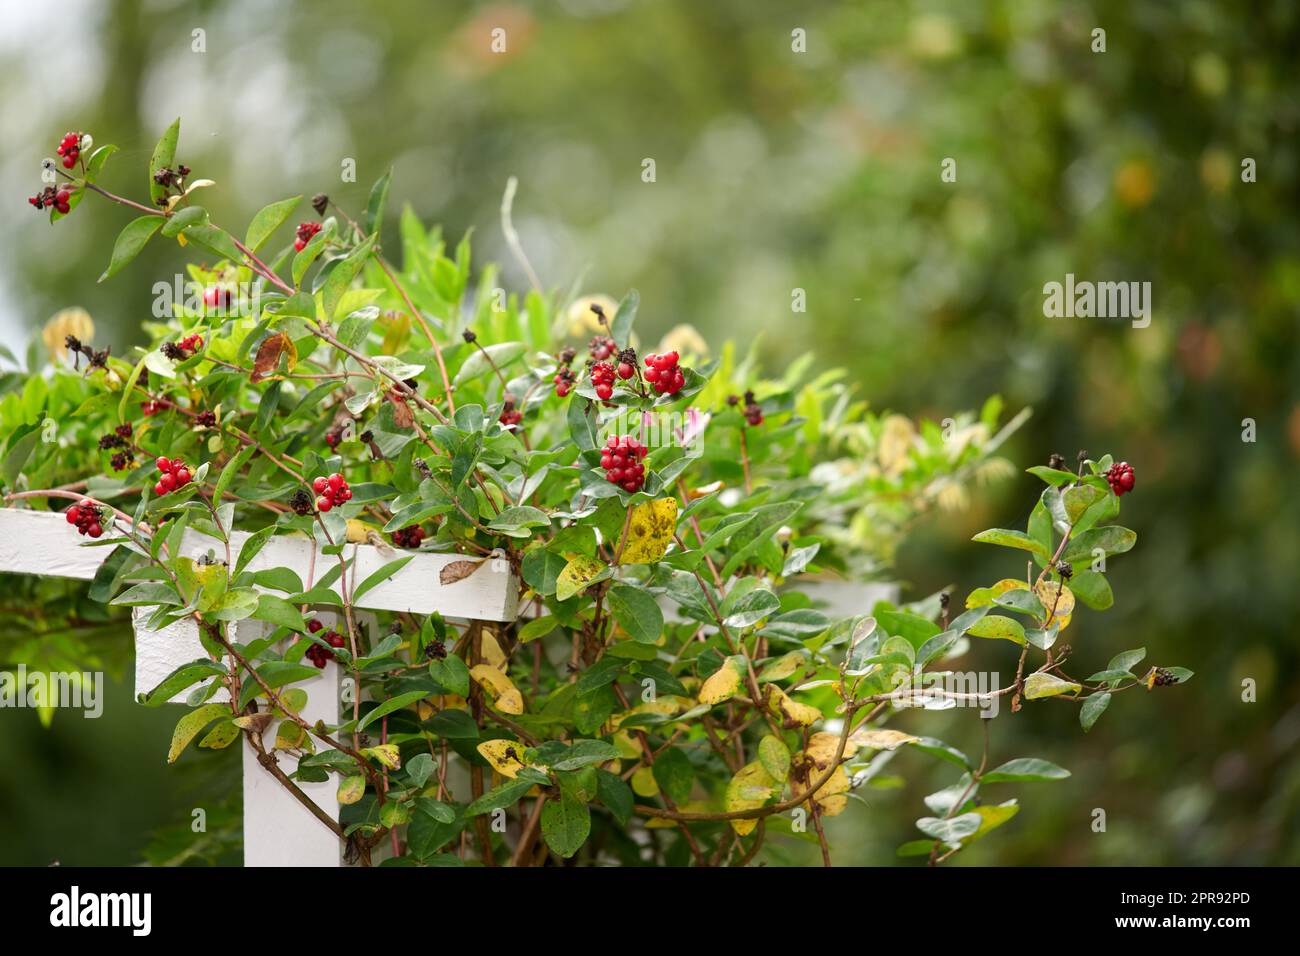 Baies de chèvrefeuille poussant dans un jardin à l'extérieur. Croissance de fruits rouges lumineux sur une plante vivace commune créant un beau contraste dans une cour verte hedgerow ou parc en été avec l'espace de copie Banque D'Images